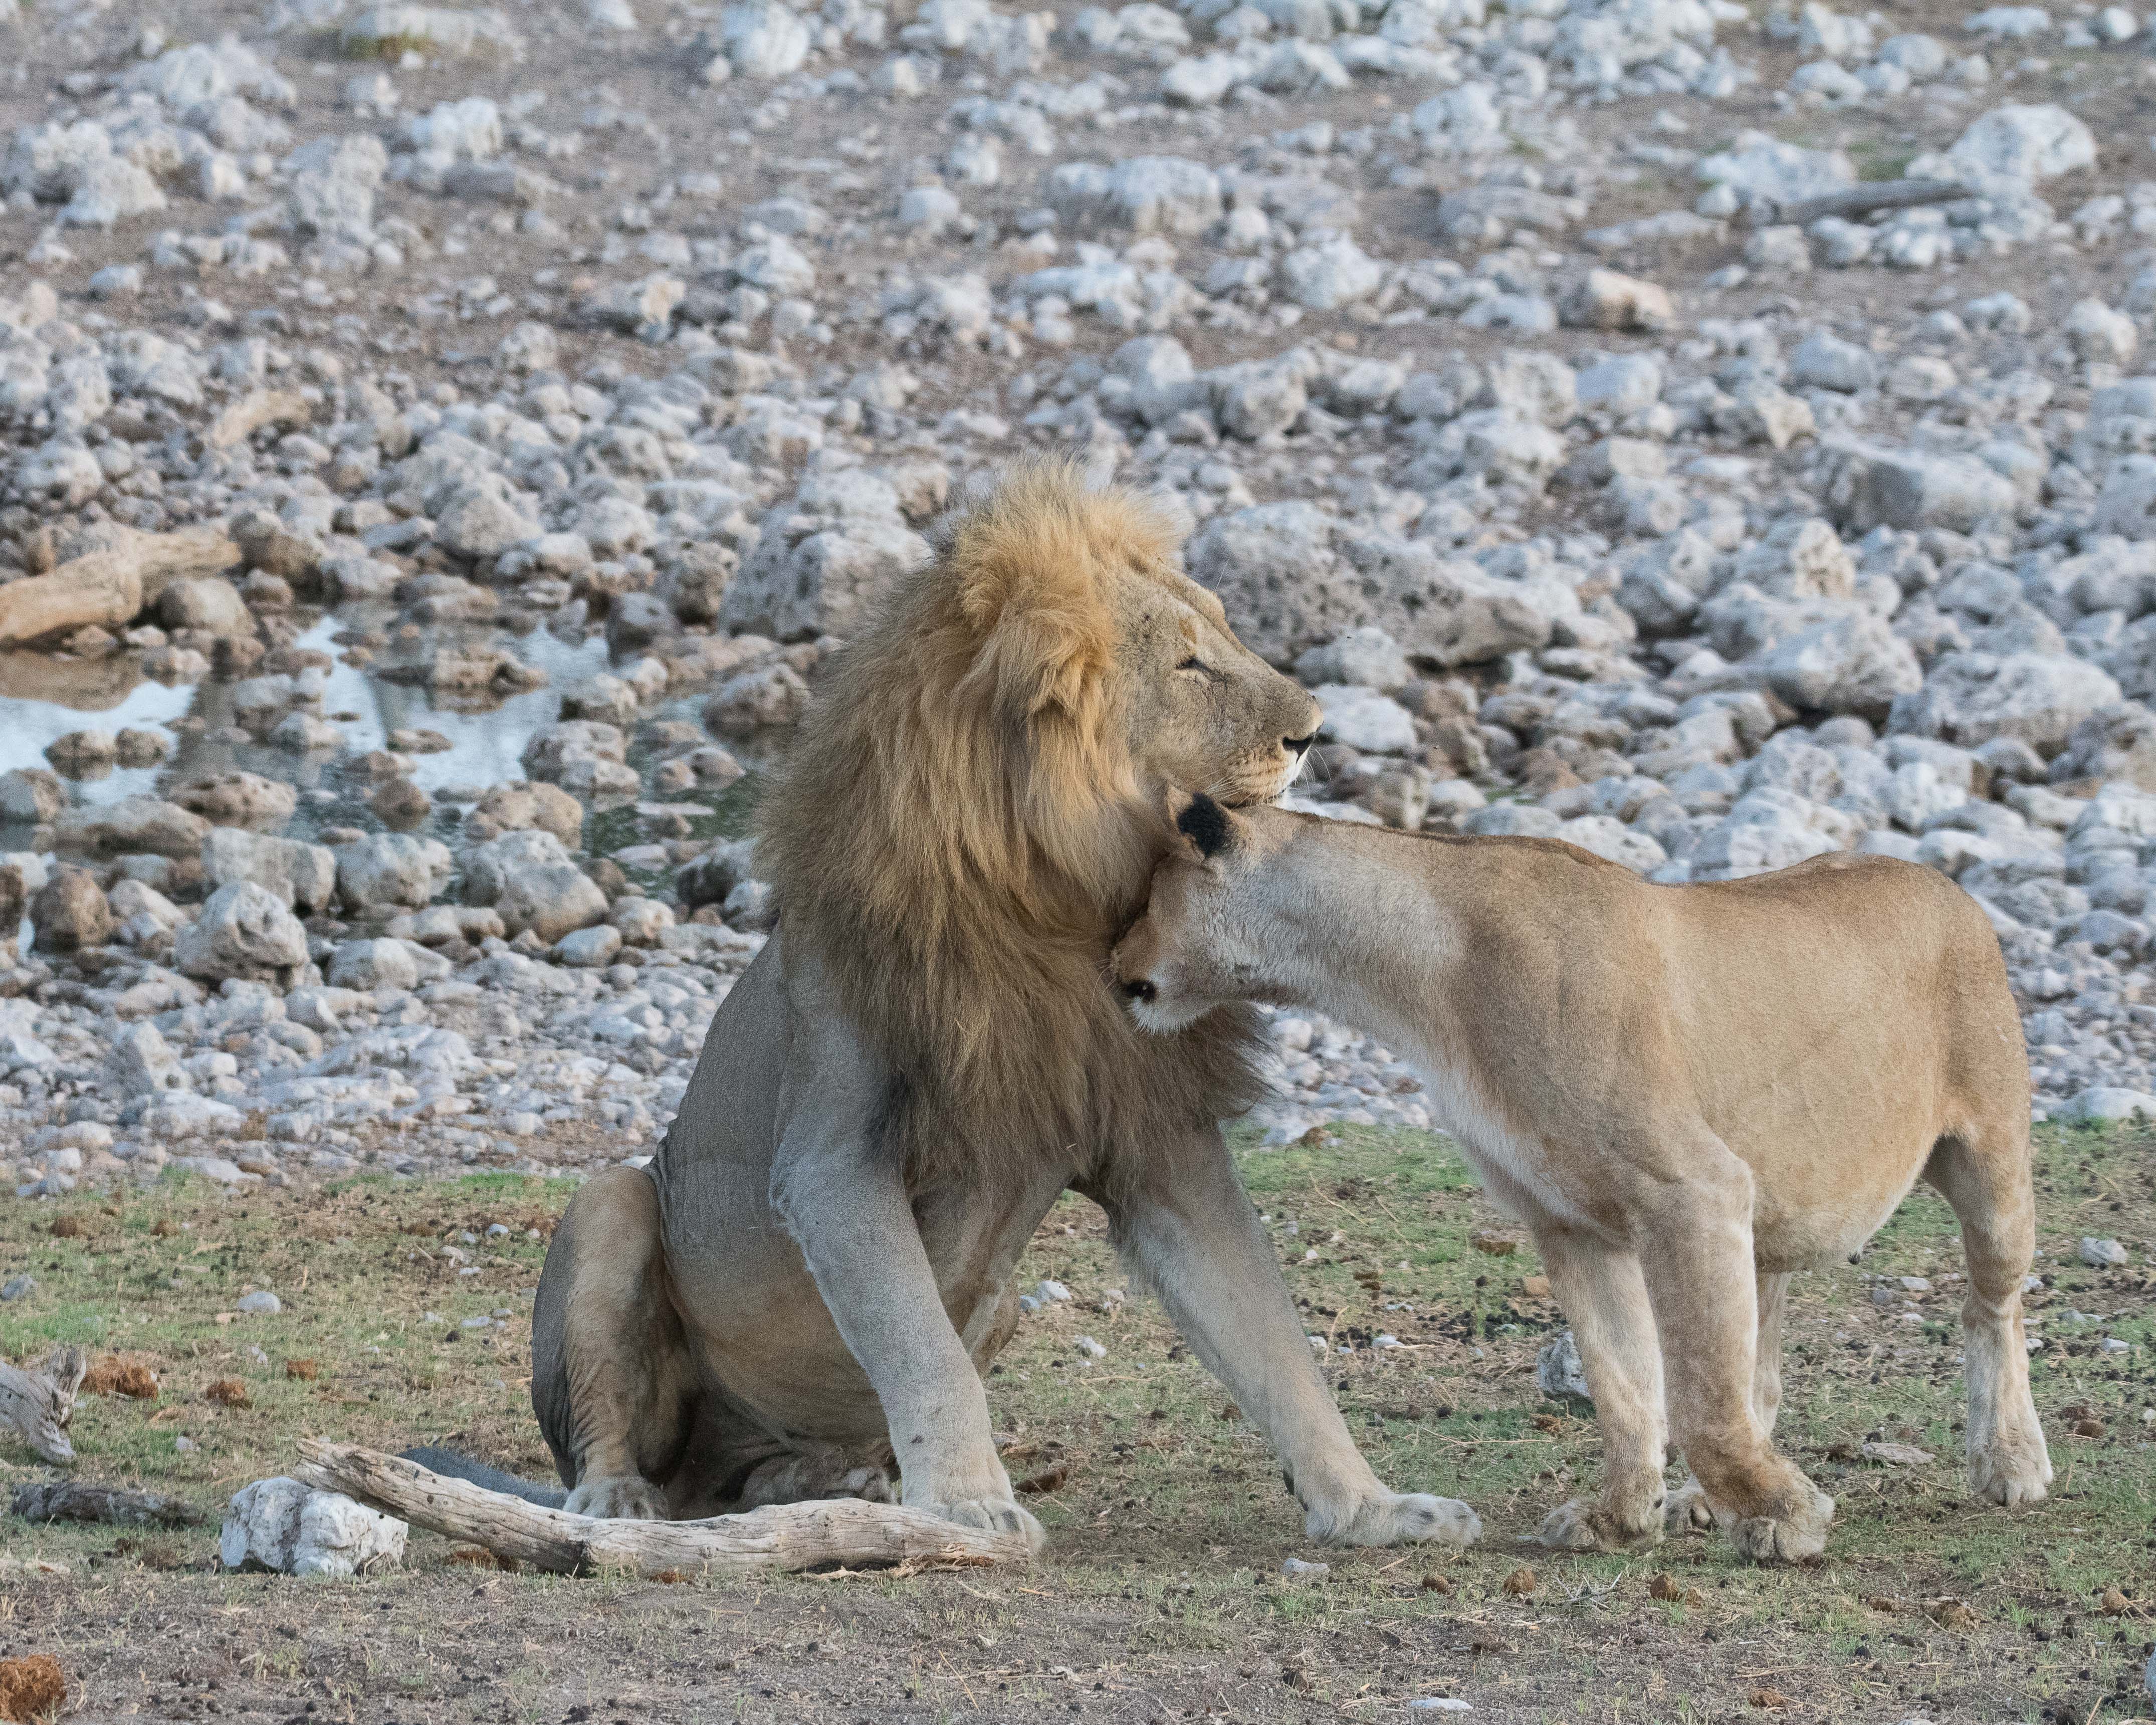 Le lion ne réagissant guère, la lionne, dont le ventre est tout aussi dilaté, se risque à des bourrades plus énergiques, à moins qu'il s'agisse d'avances à visée sexuelle ! Namutoni, Etosha, Namibie.